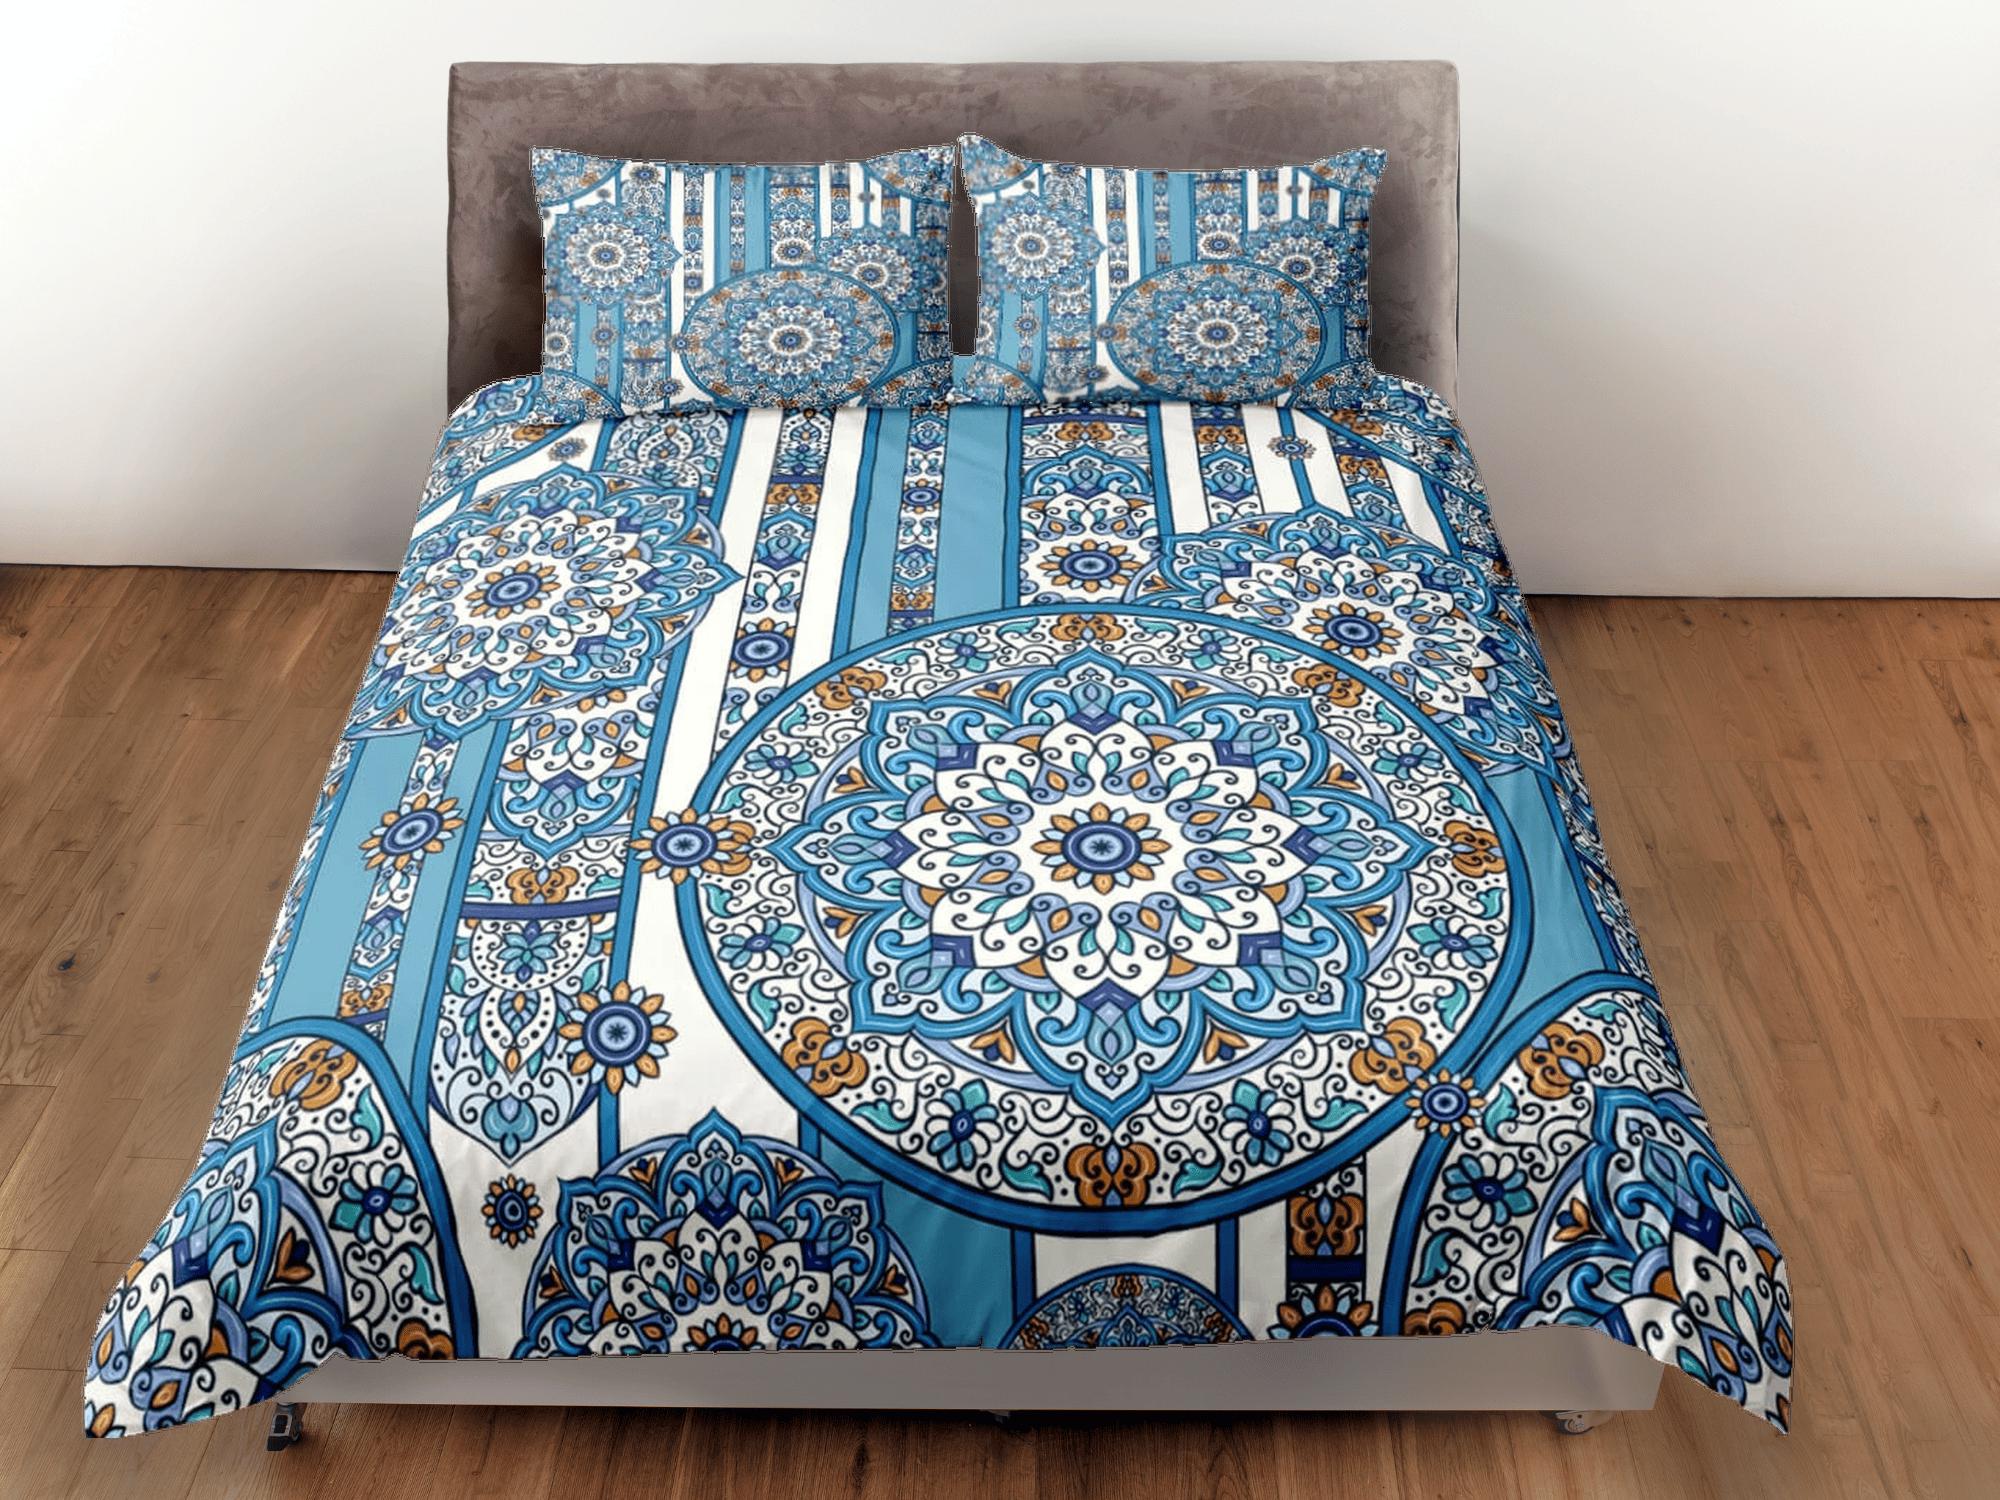 daintyduvet Blue whimsical mandala duvet cover boho bedding set full, queen, king, dorm bedding, aesthetic room decor indian bedspread maximalist decor